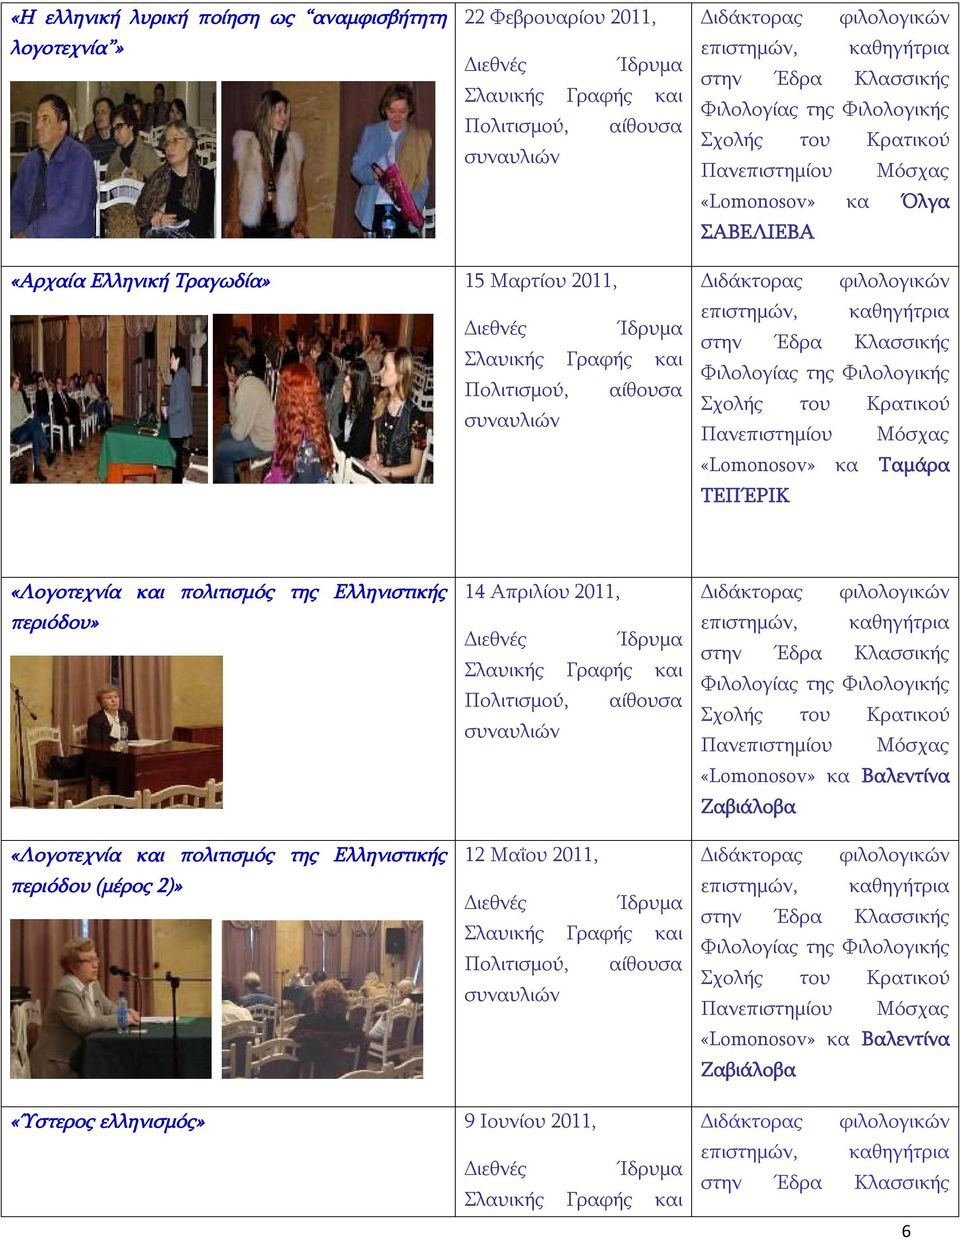 αίθουσα συναυλιών Διδάκτορας φιλολογικών επιστημών, καθηγήτρια στην Έδρα Κλασσικής Φιλολογίας της Φιλολογικής Σχολής του Κρατικού Πανεπιστημίου Μόσχας «Lomonosov» κα Ταμάρα ΤΕΠΈΡΙΚ «Λογοτεχνία και